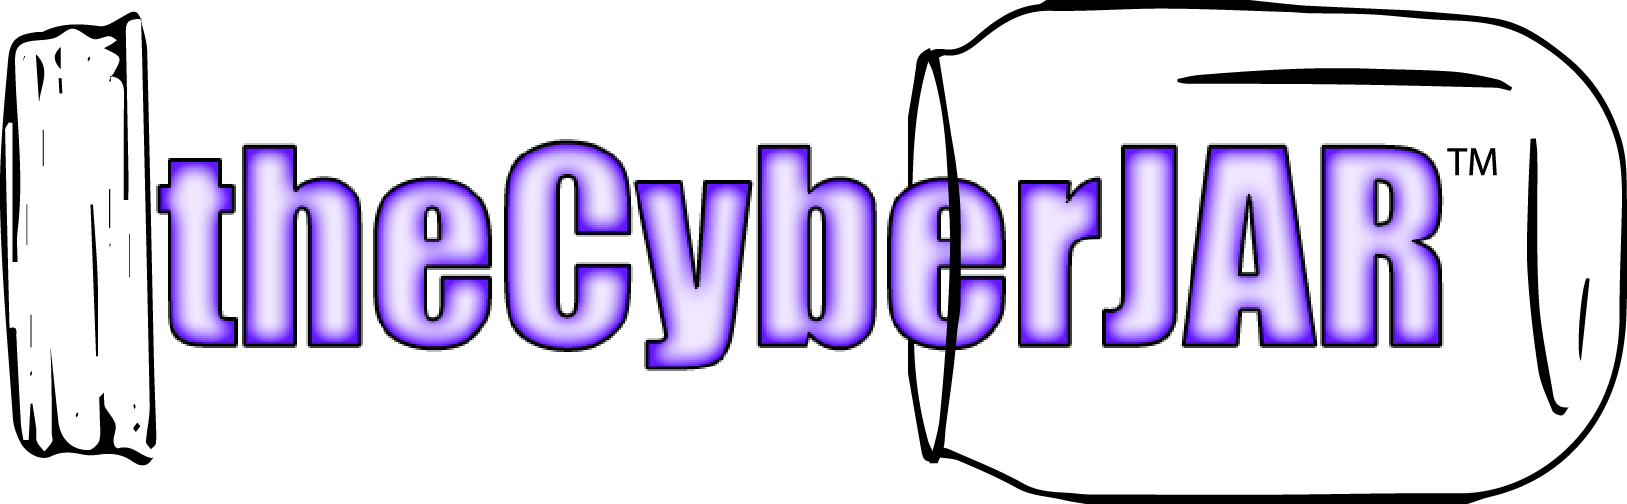 thecyberjar Logo